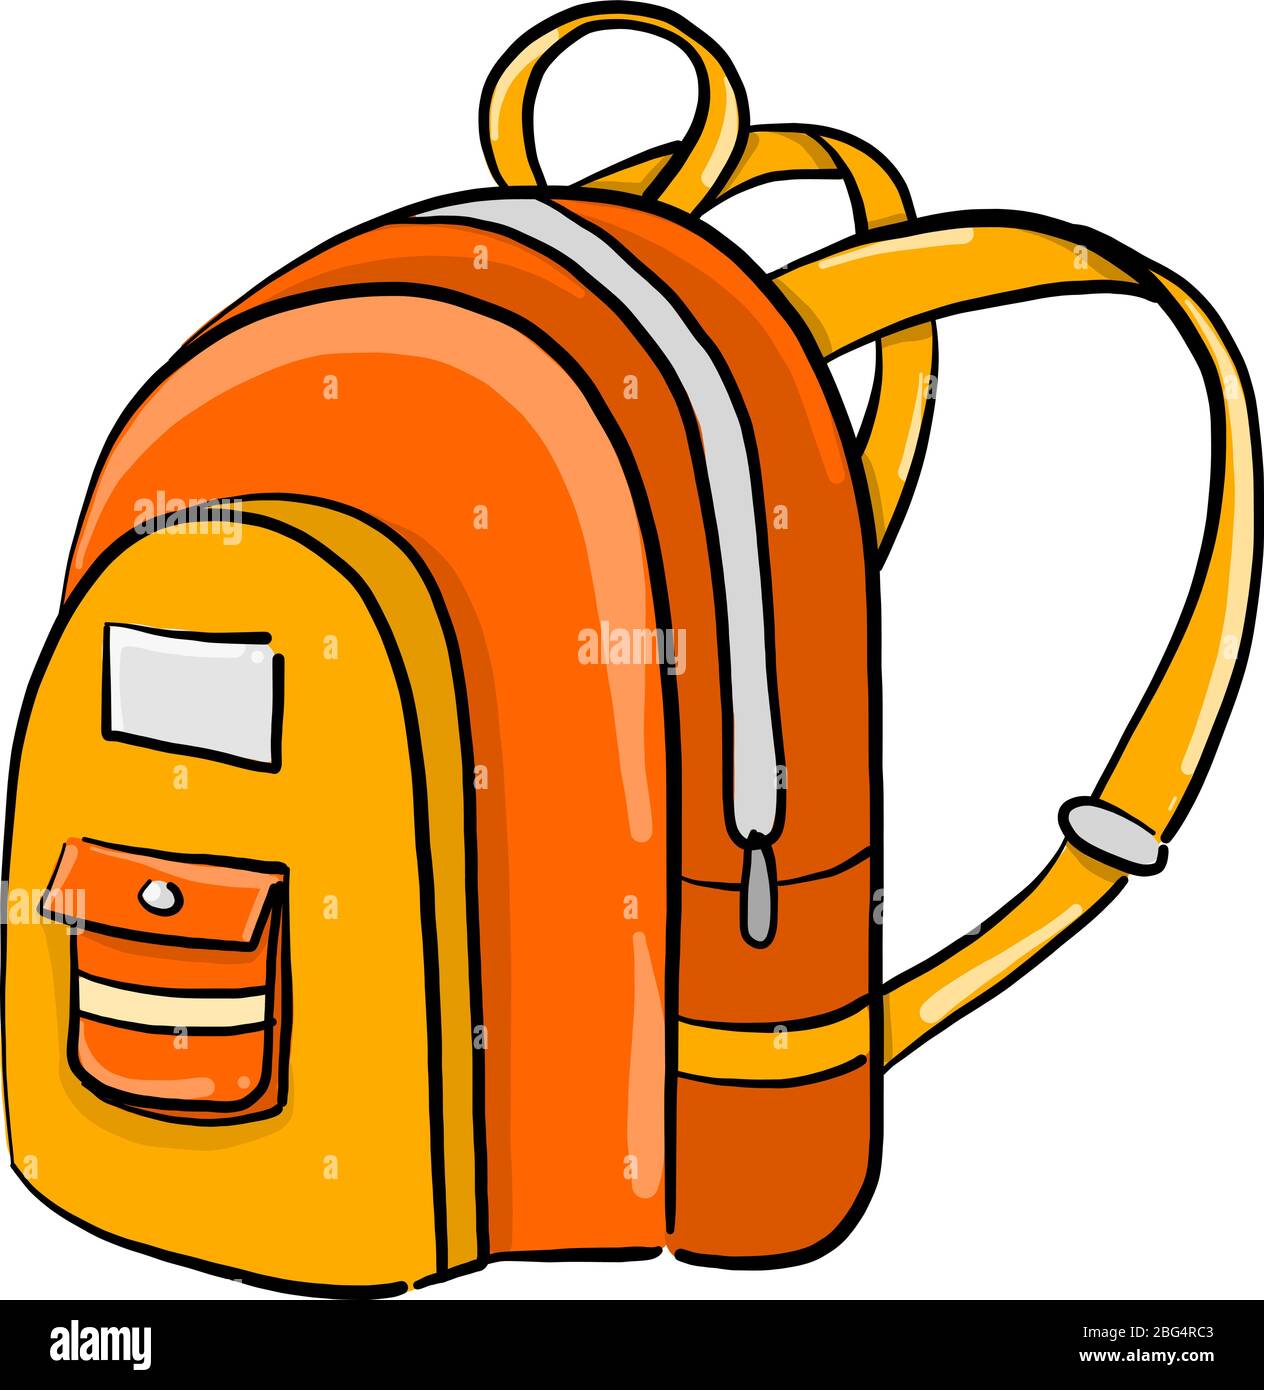 Orange school bag, illustration, vector on white background Stock ...